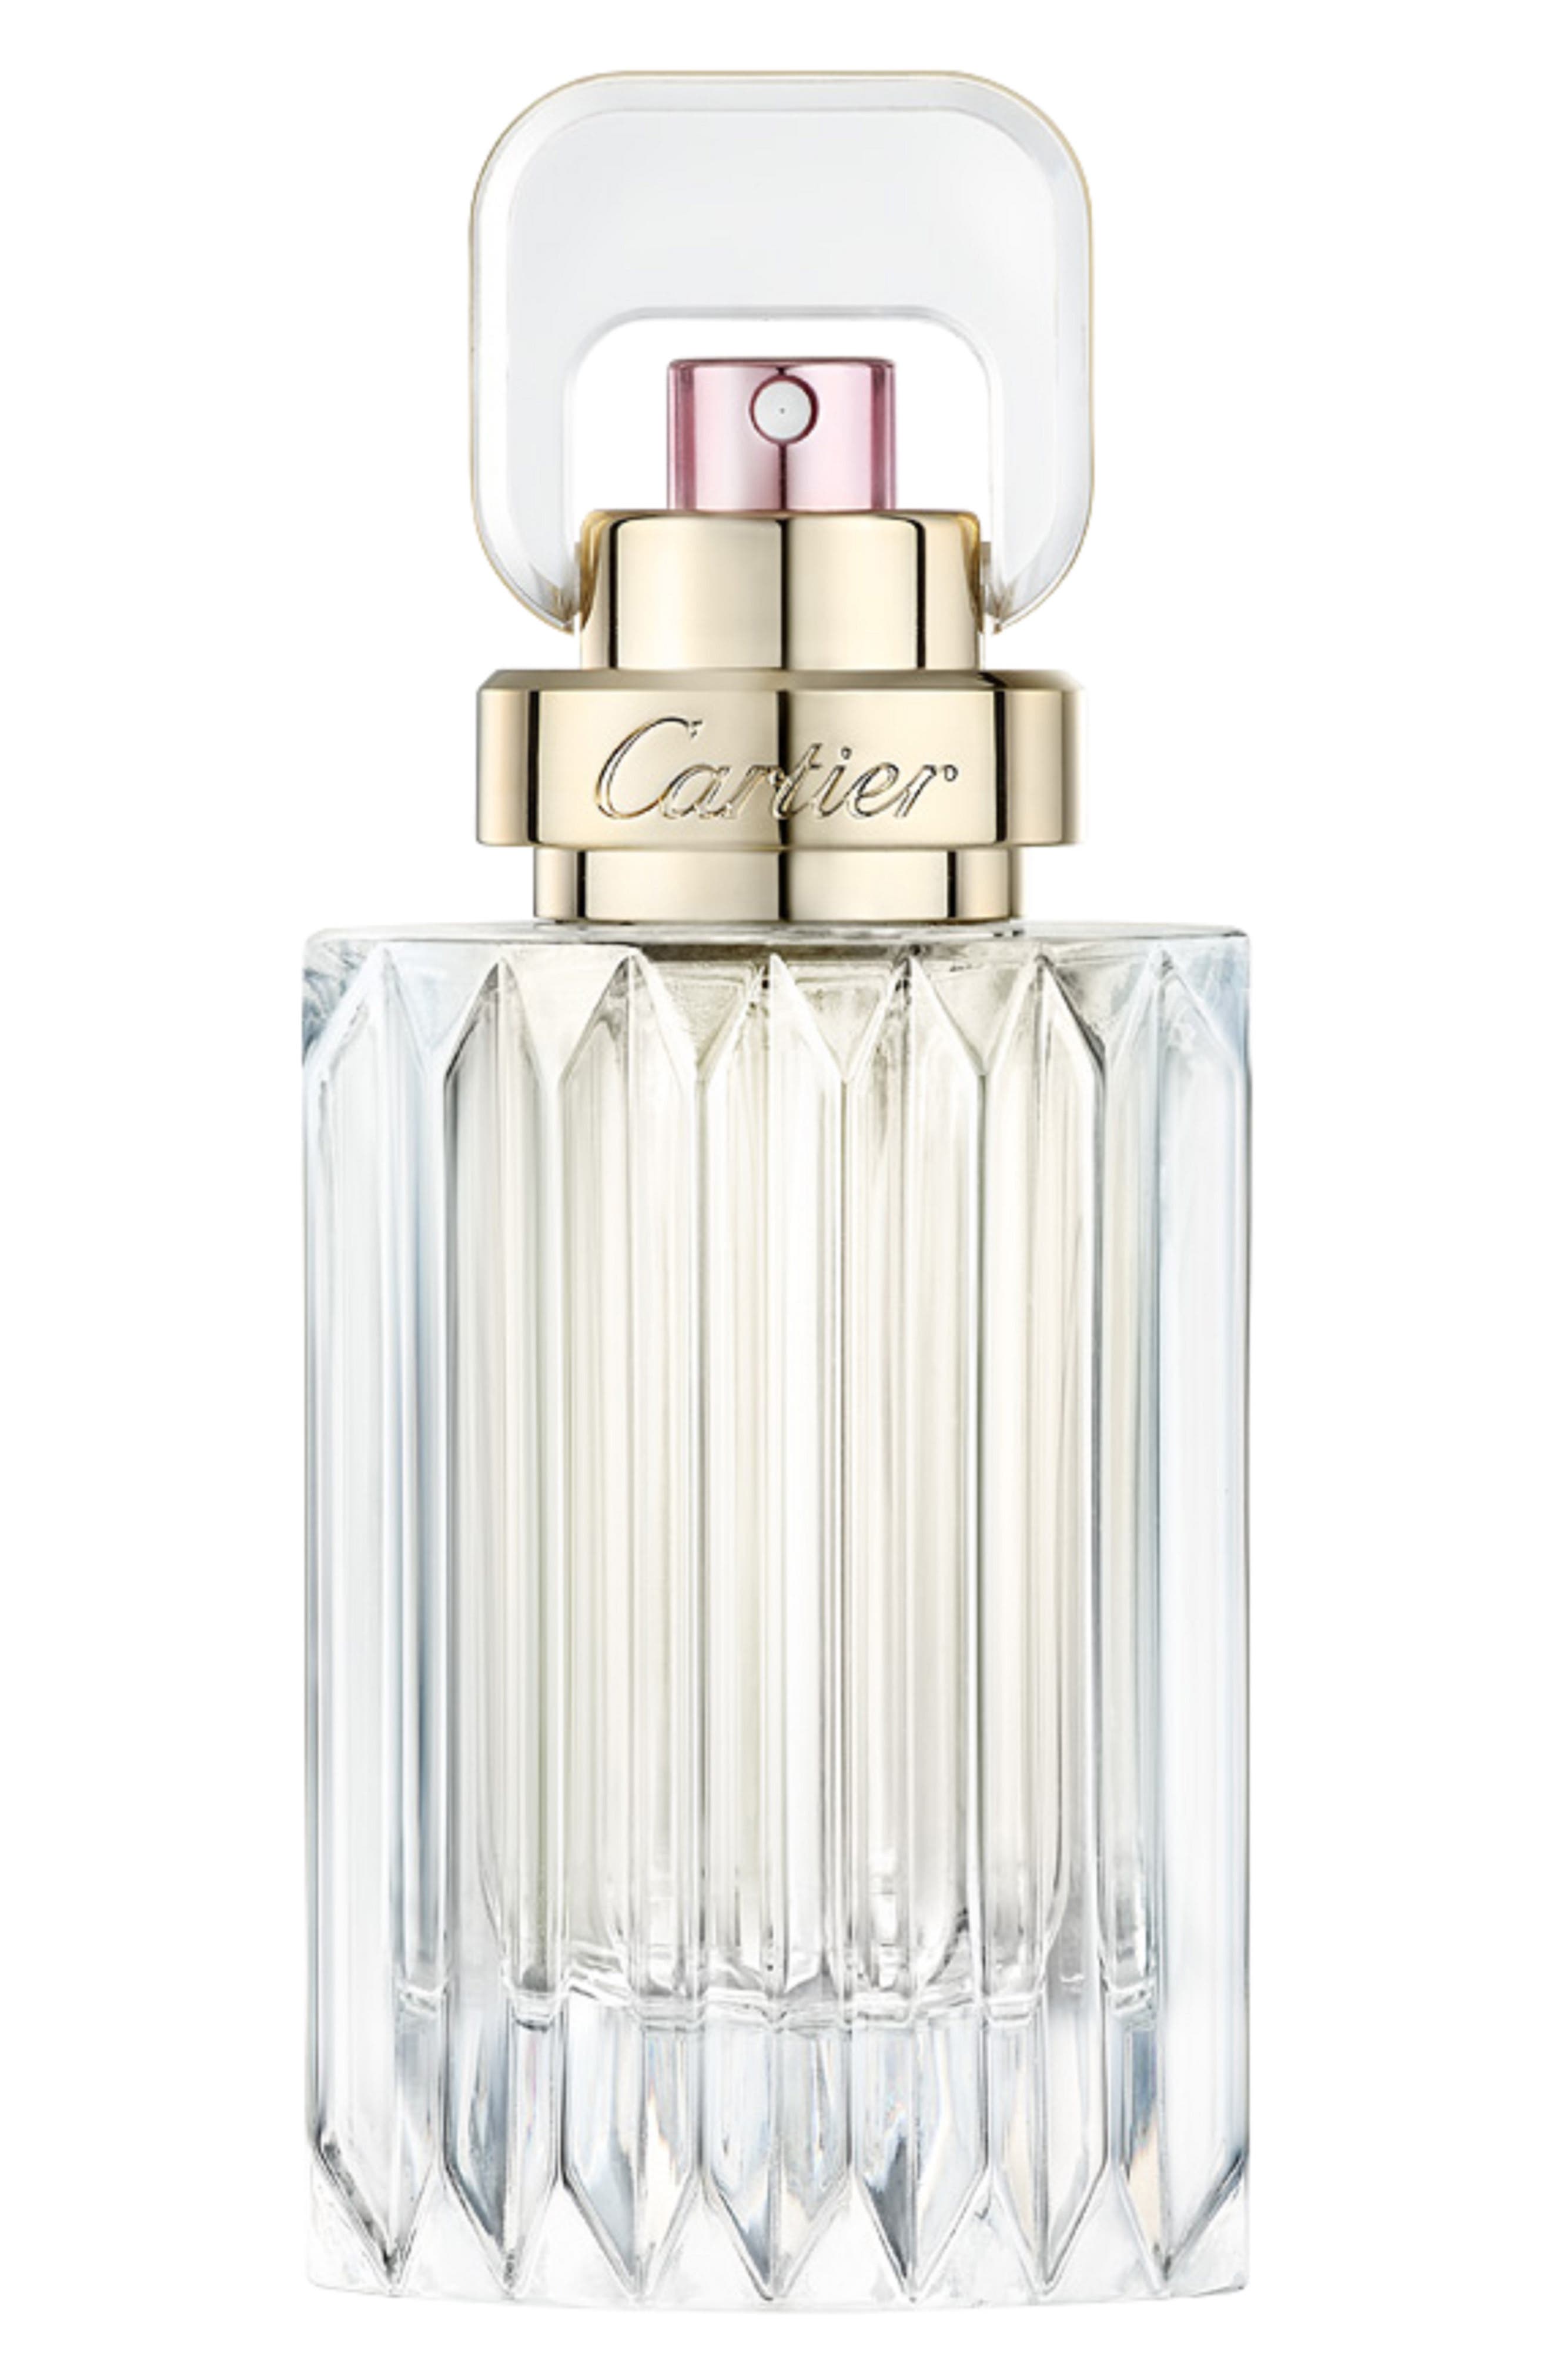 Cartier Carat Eau de Parfum at Nordstrom, Size 1 Oz